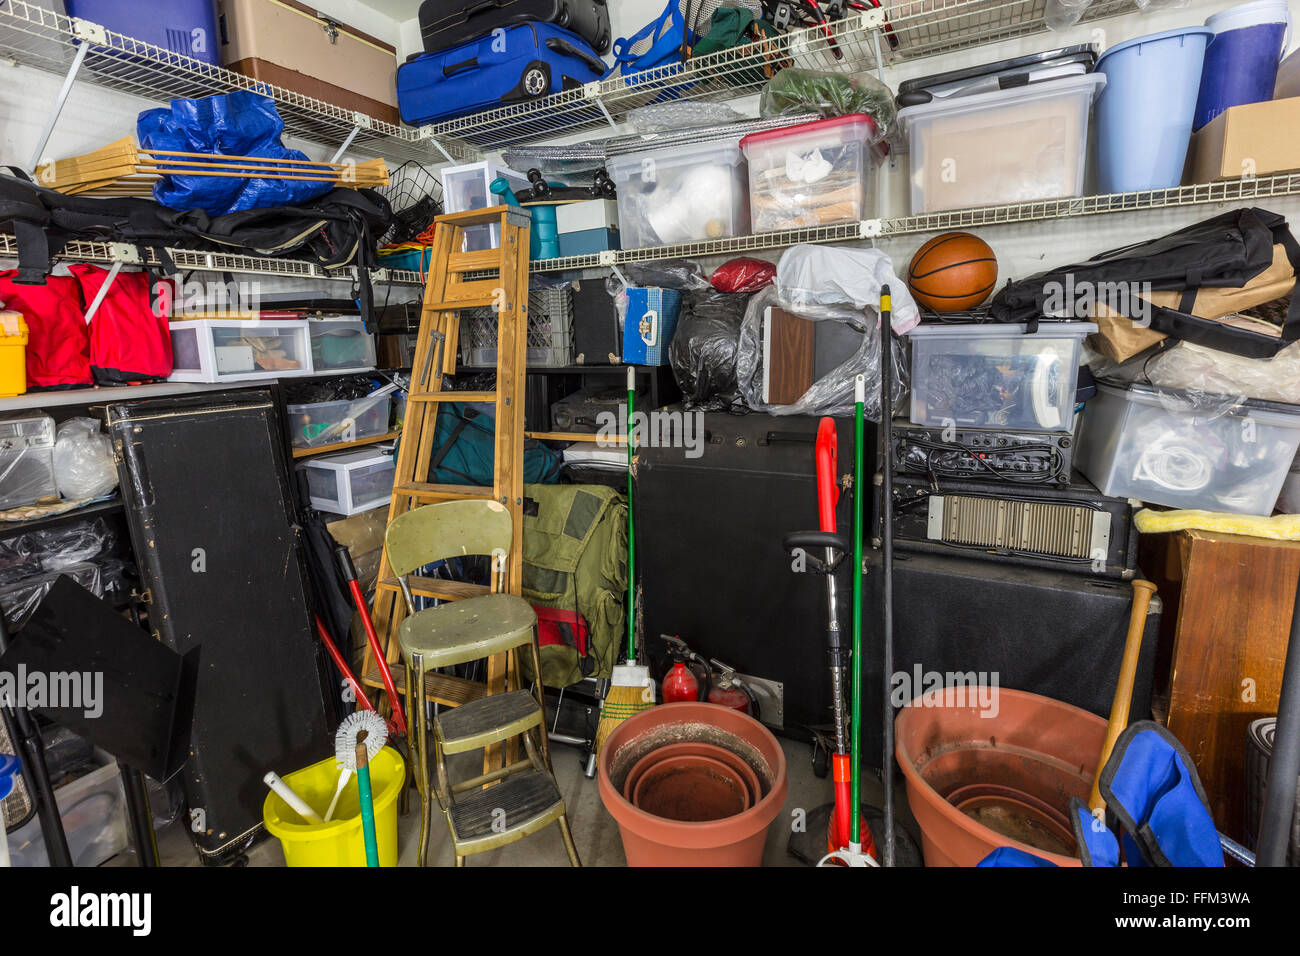 Sehr chaotisch Garage mit Werkzeug, Spielzeug, Musik Sport und Gartenarbeit Artikel. Stockfoto